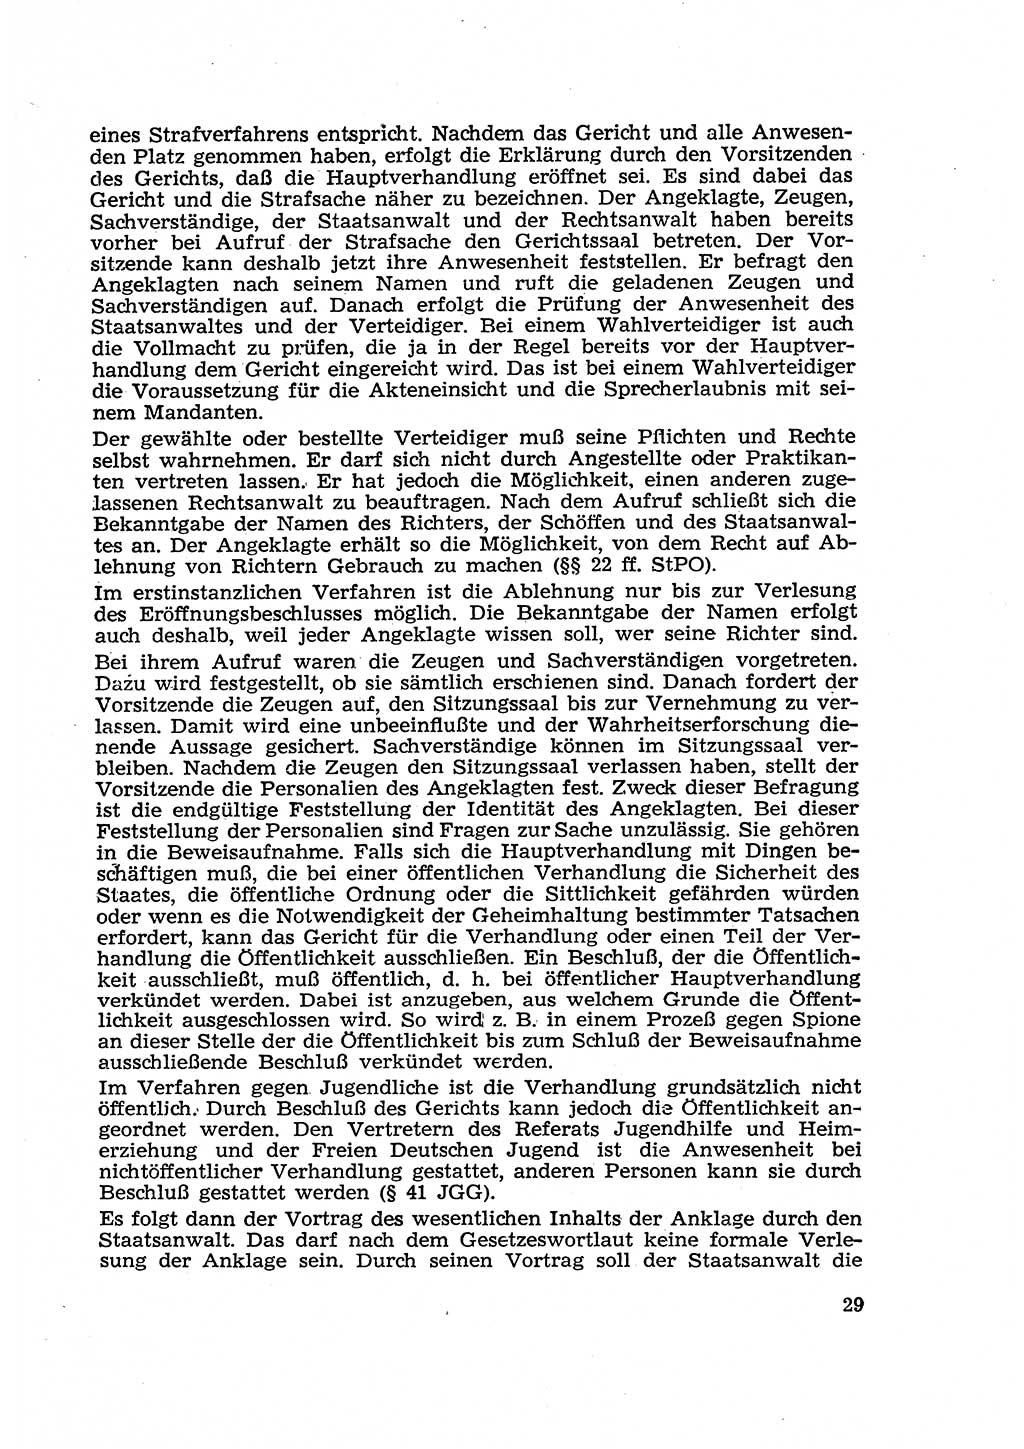 Strafverfahren in der Deutschen Demokratischen Republik (DDR) und seine demokratischen Prinzipien 1956, Seite 29 (Str.-Verf. DDR 1956, S. 29)